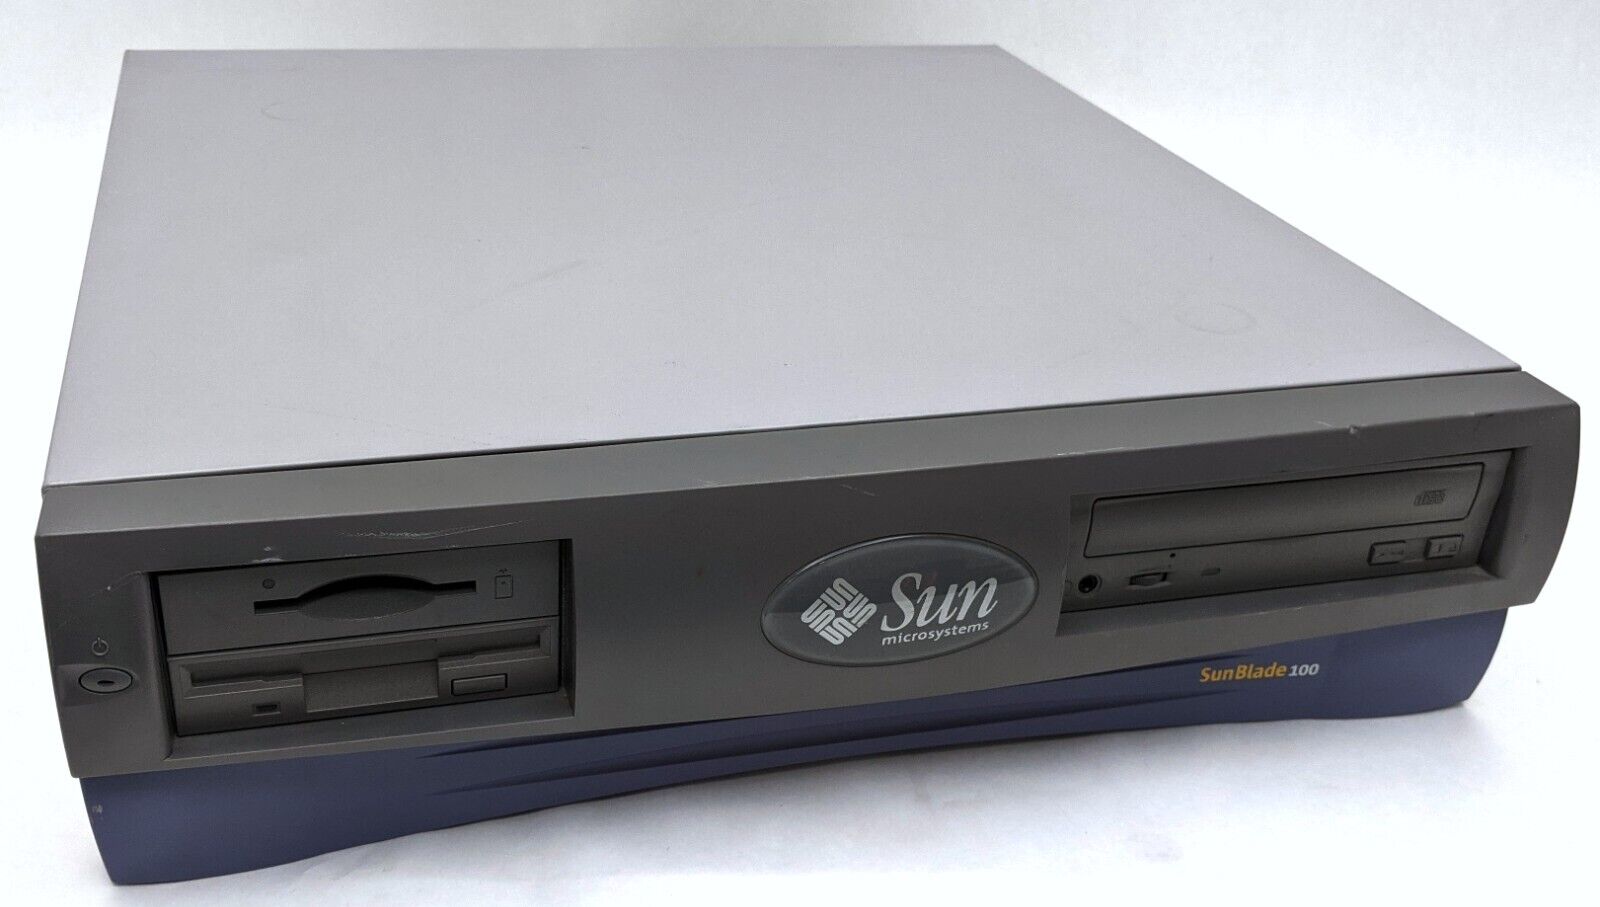 Vintage Sun Blade 100 Sun UltraSPARC IIe 500MHz 1536MB RAM 80GB HDD ATI Rage XL